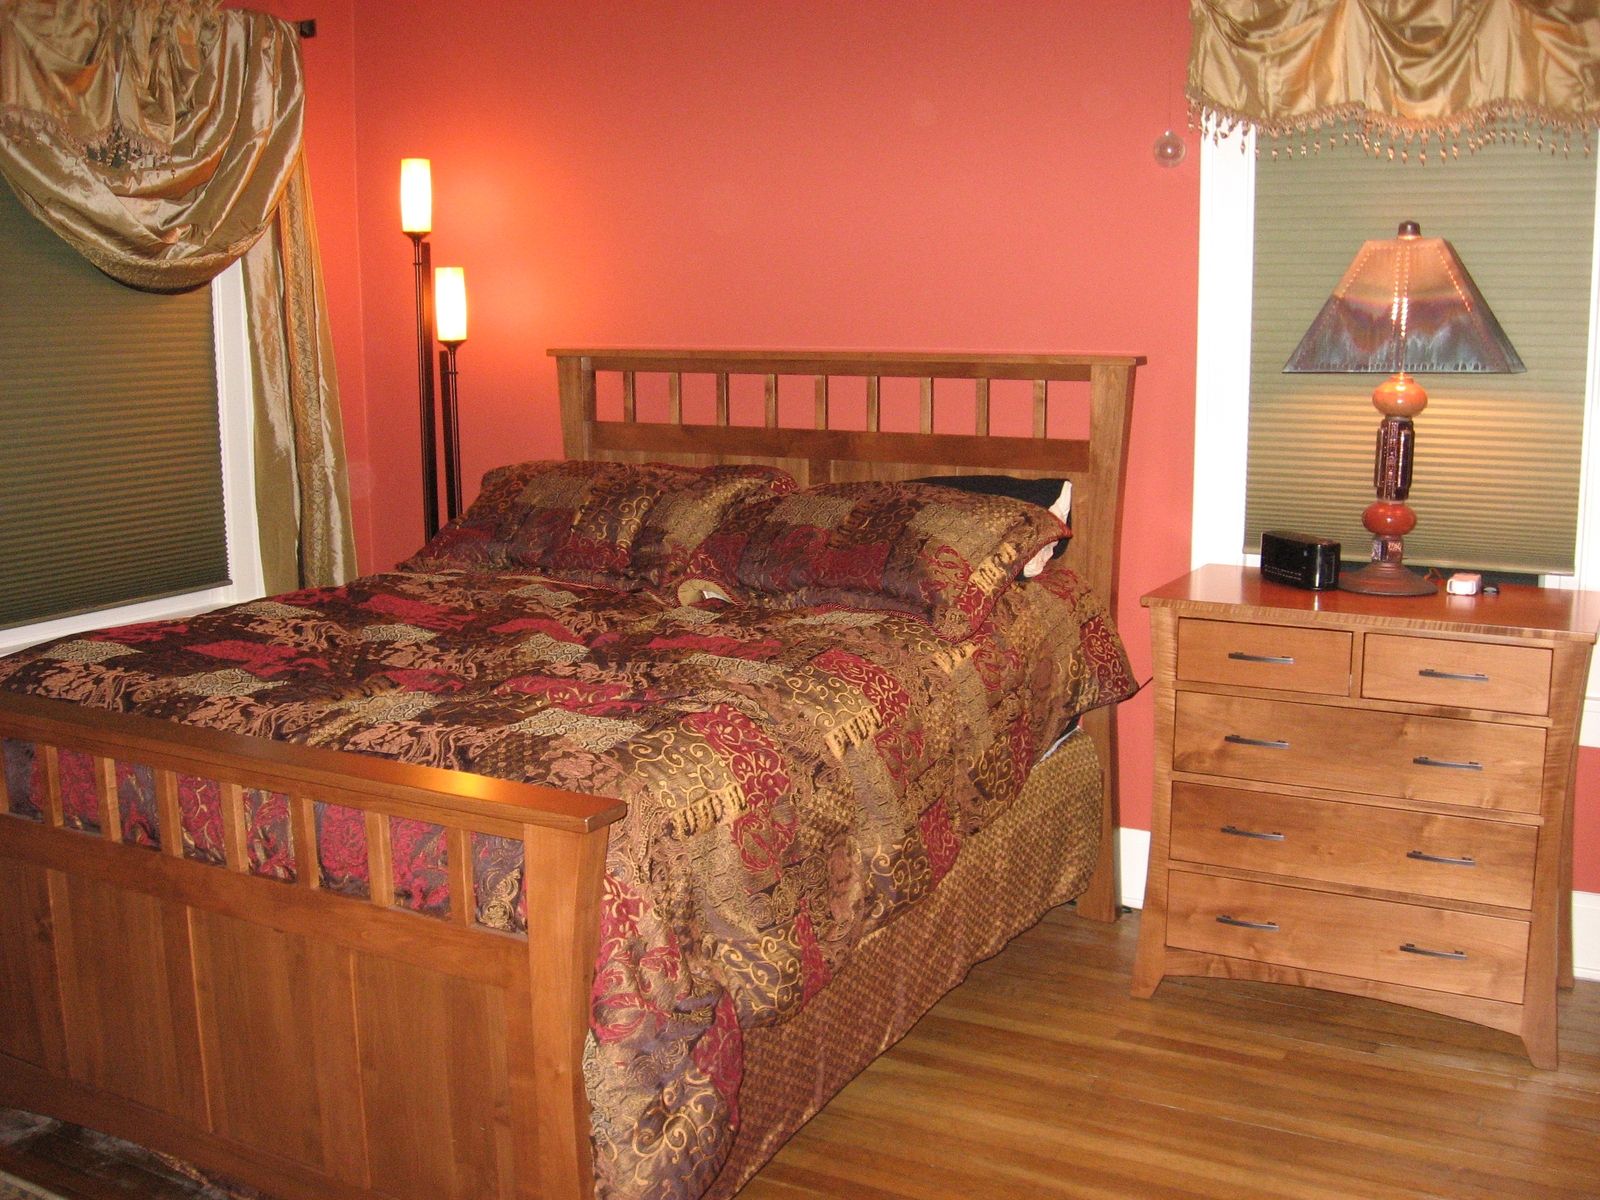 stanley maple bedroom furniture